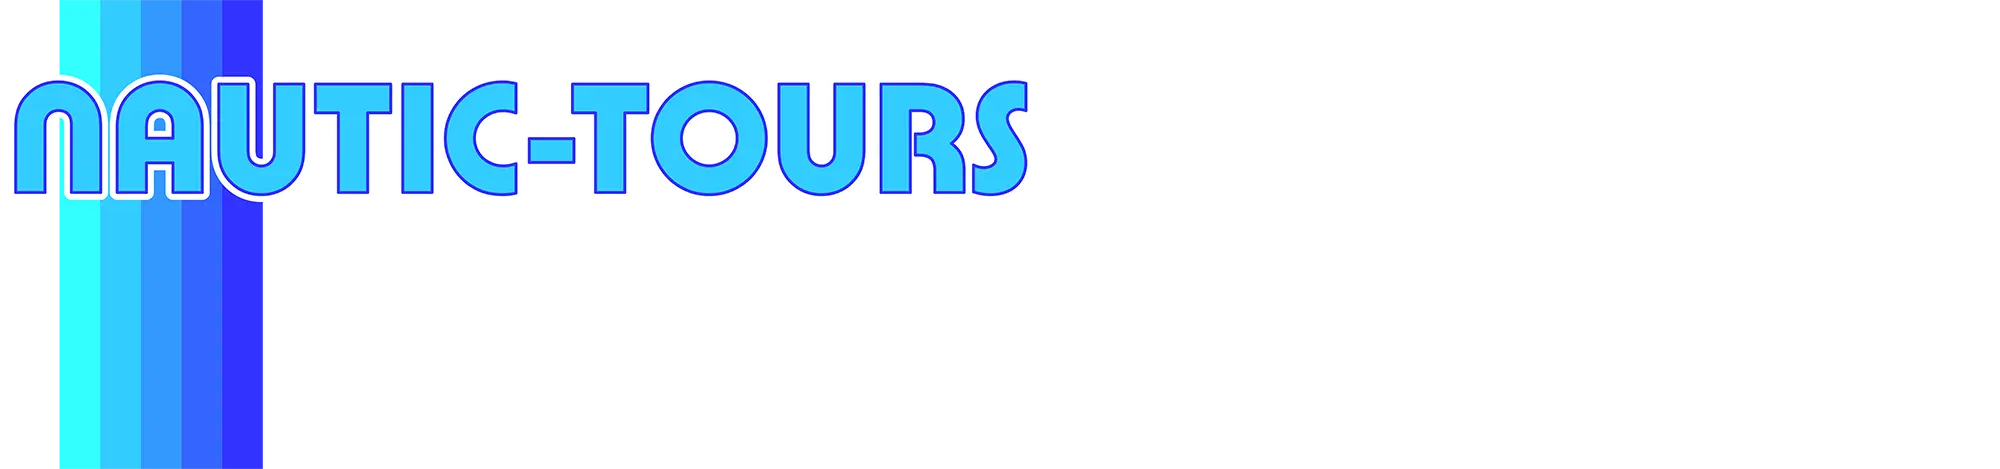 Nautic-Tours Logo